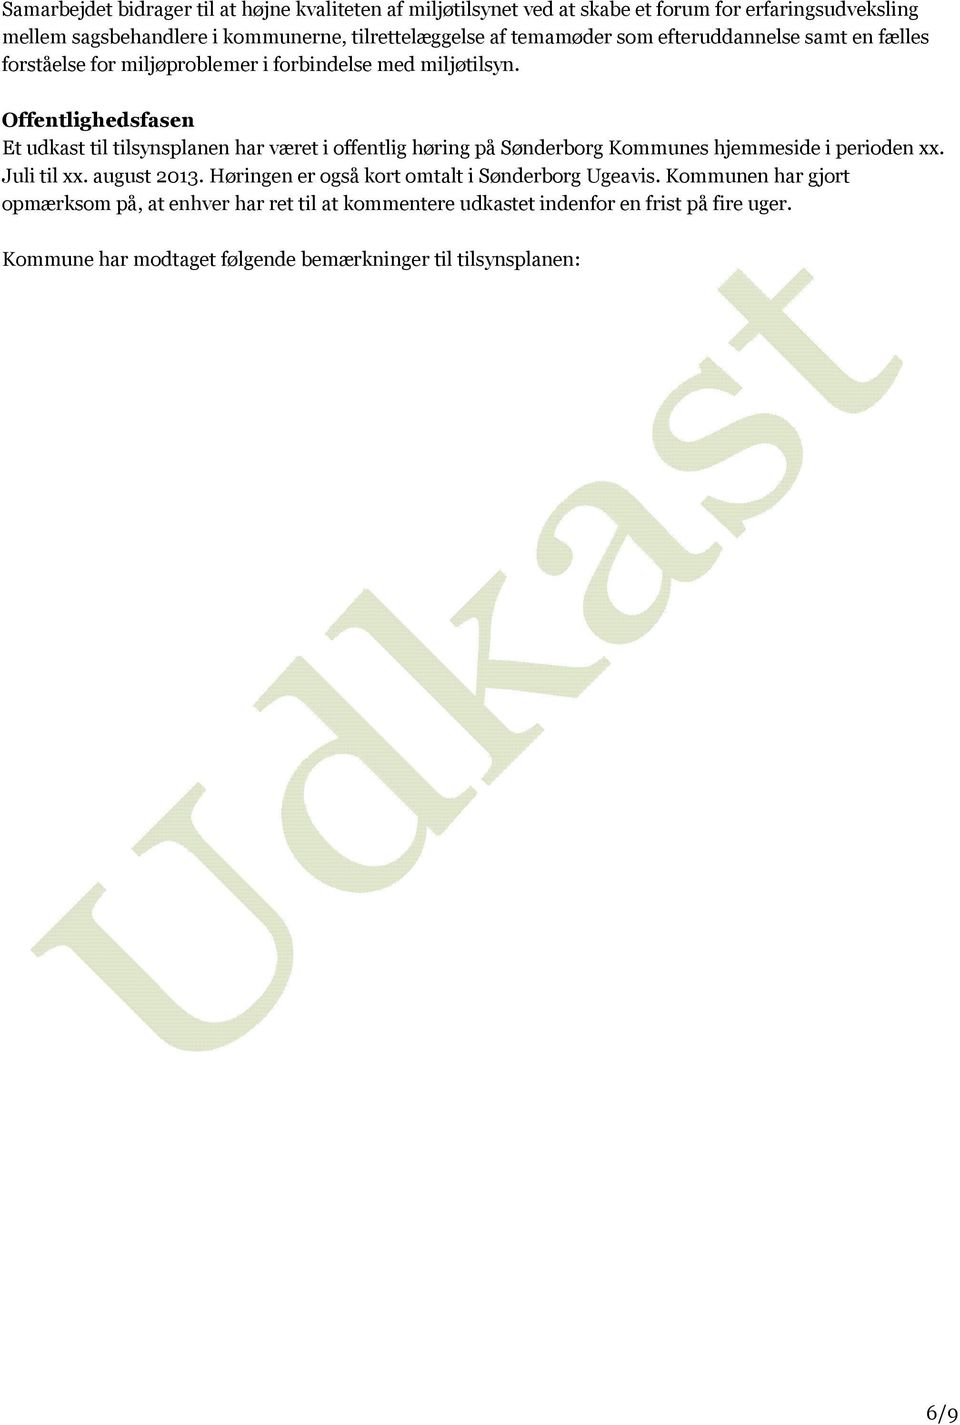 Offentlighedsfasen Et udkast til tilsynsplanen har været i offentlig høring på Sønderborg Kommunes hjemmeside i perioden xx. Juli til xx. august 2013.